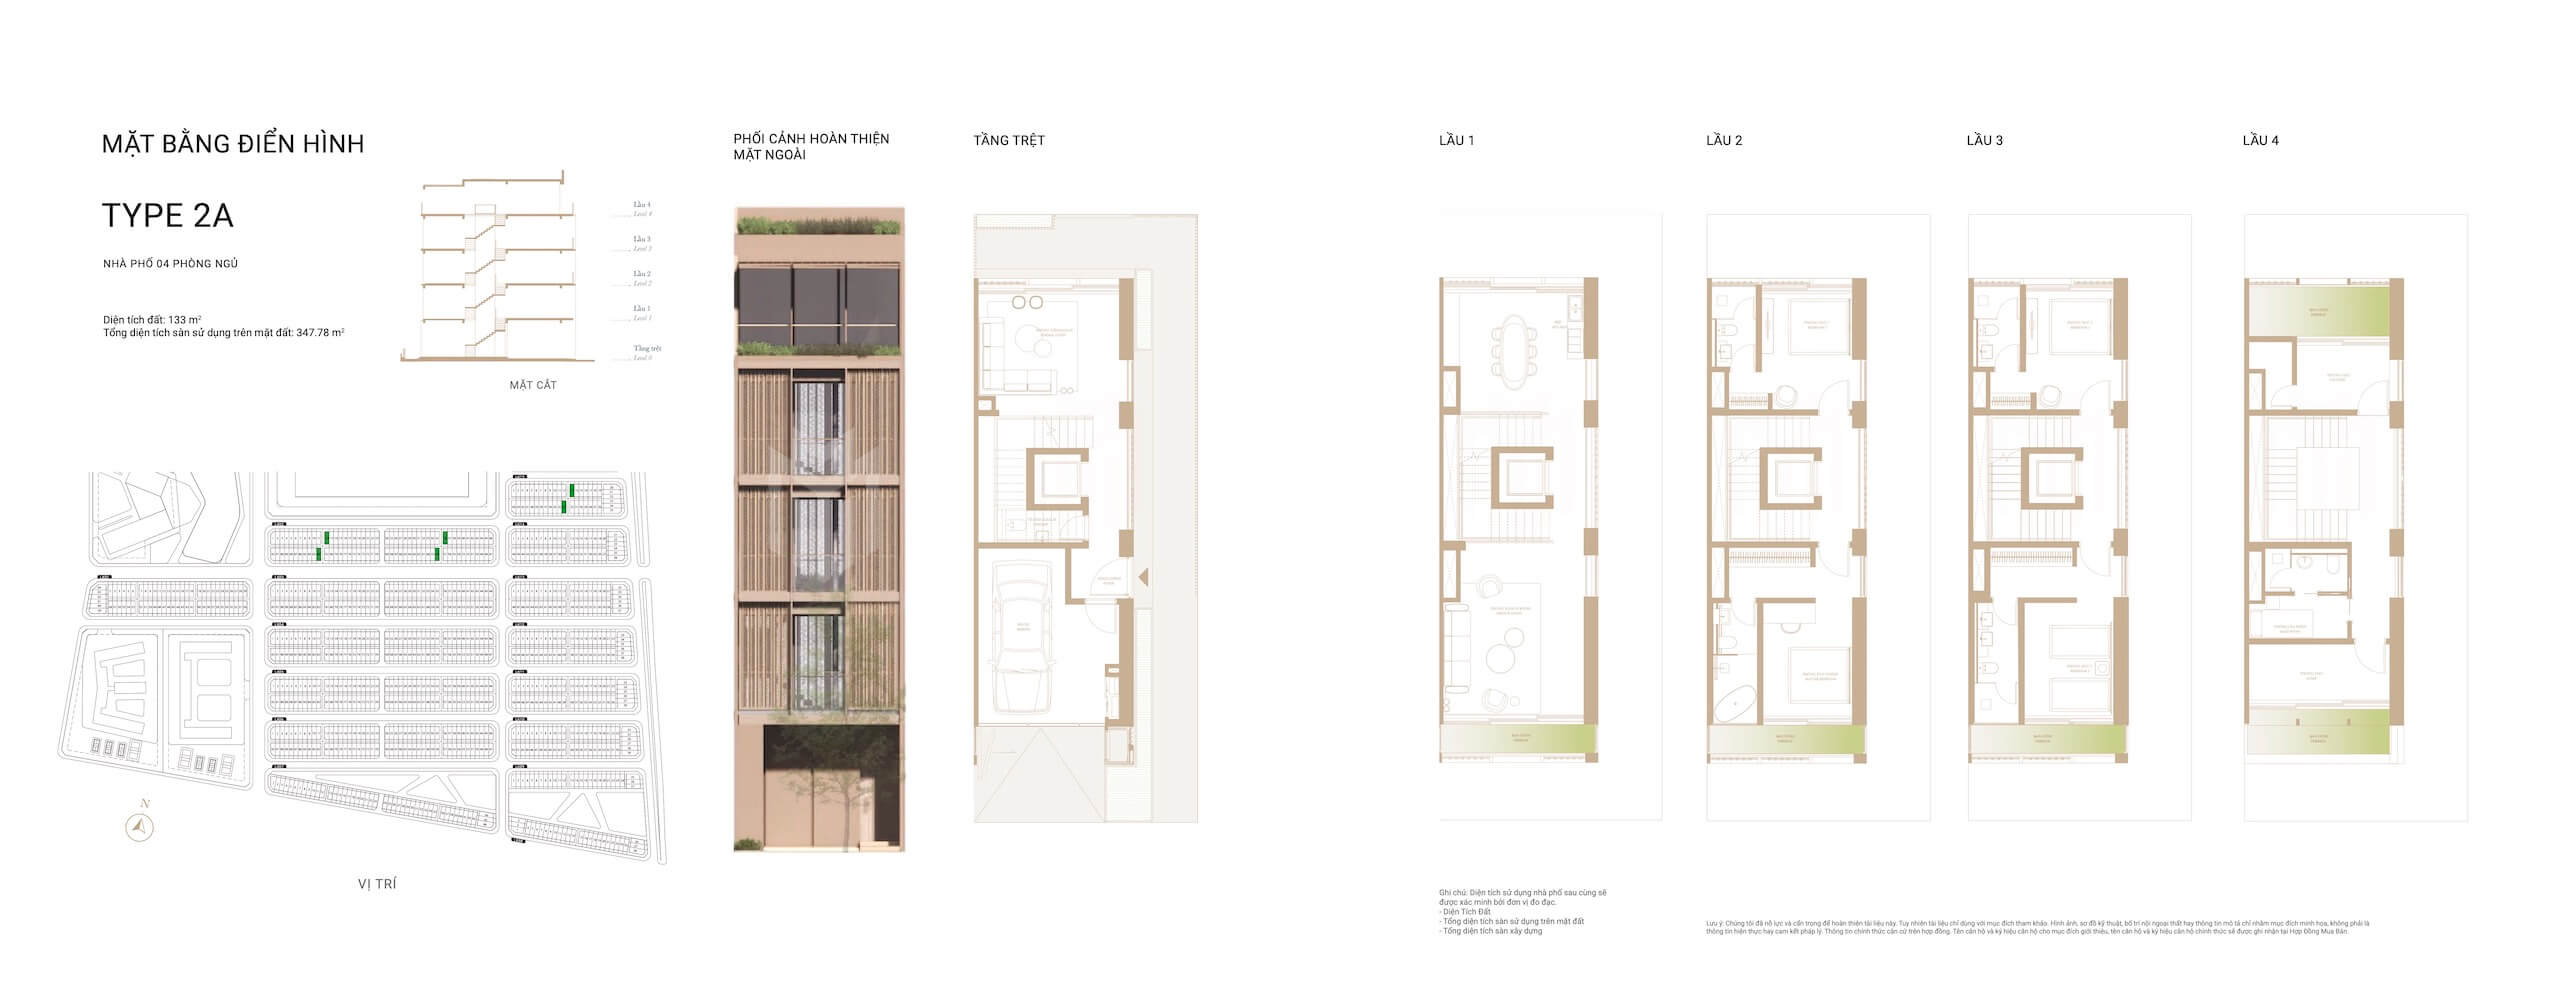 layout mặt bằng nhà phố shophouse dự án The Global City Masterise Homes Thủ Đức thiết kế loại Type 2A phân khu SOHO